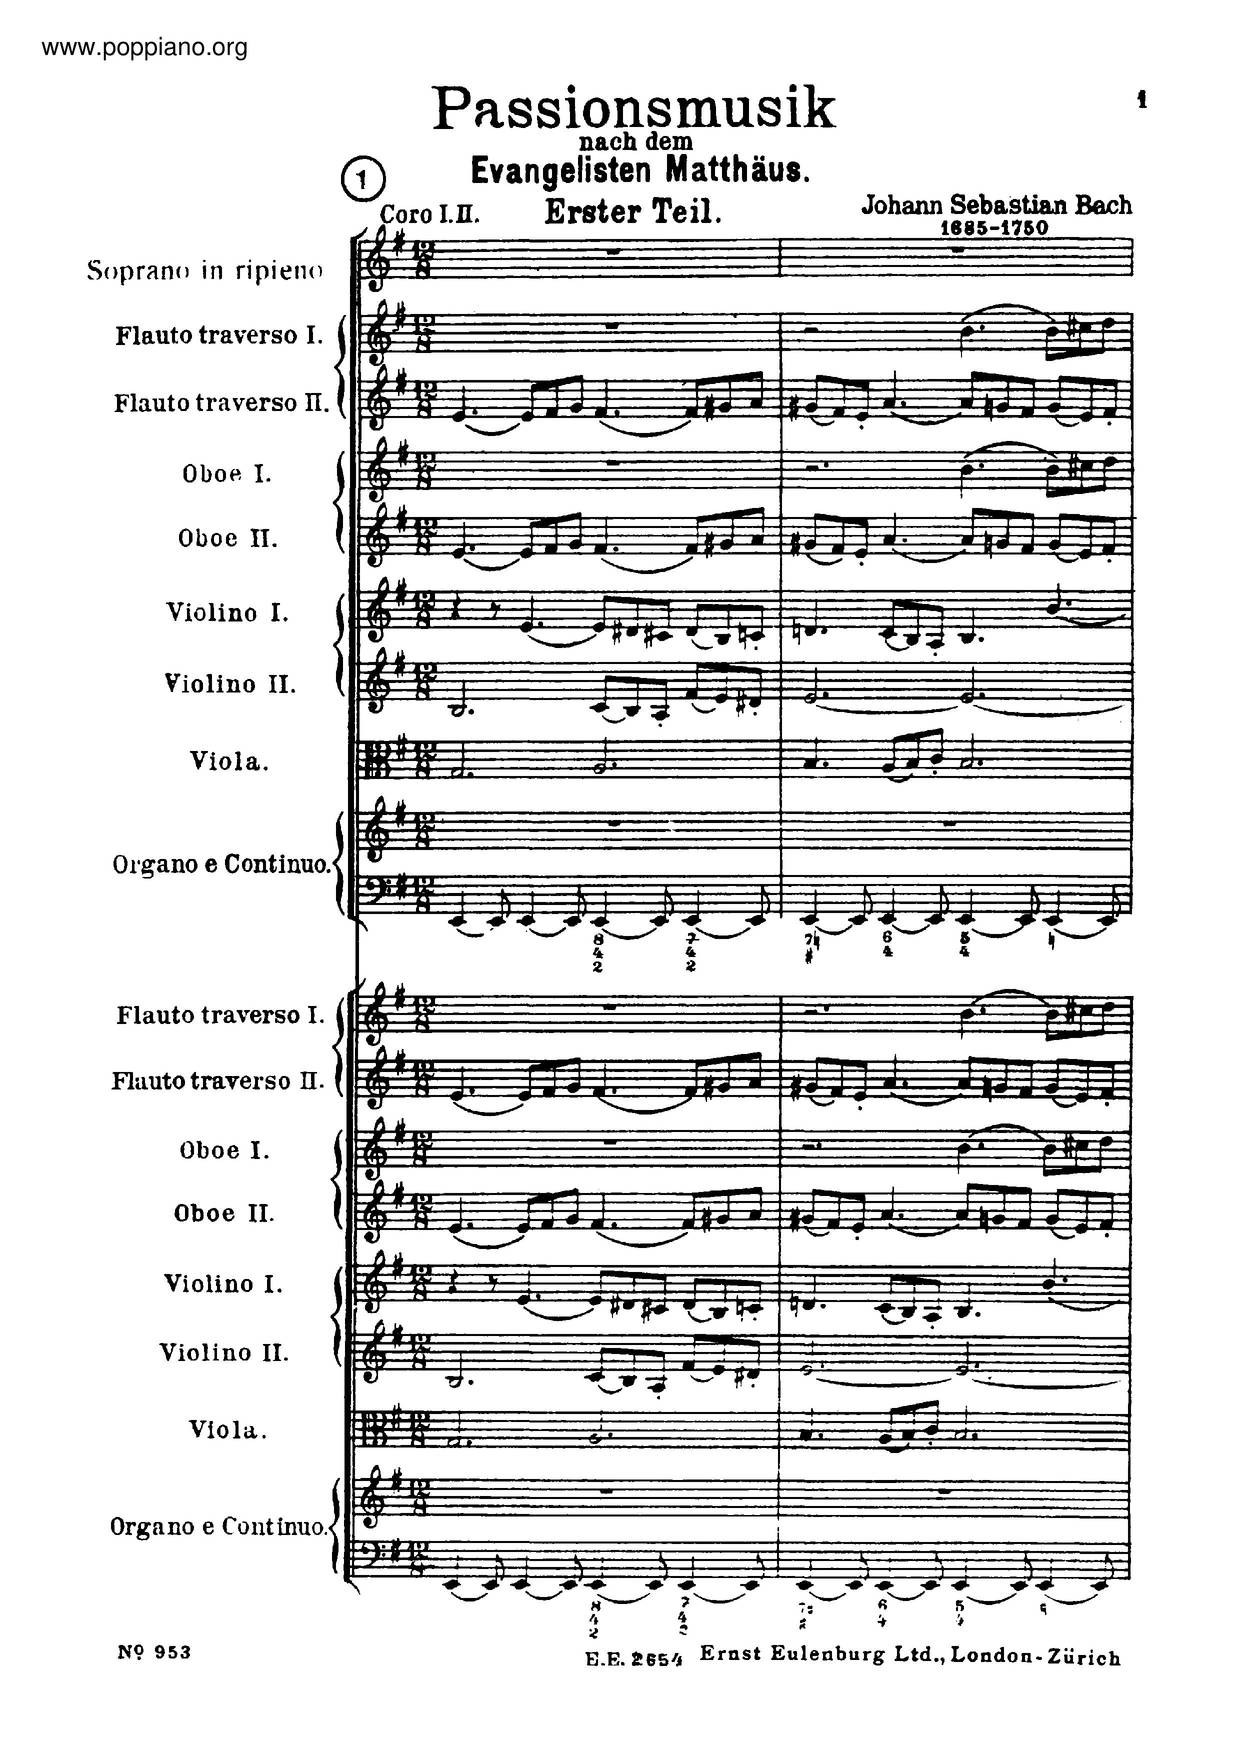 St. Matthew's Passion, BWV 244 Score